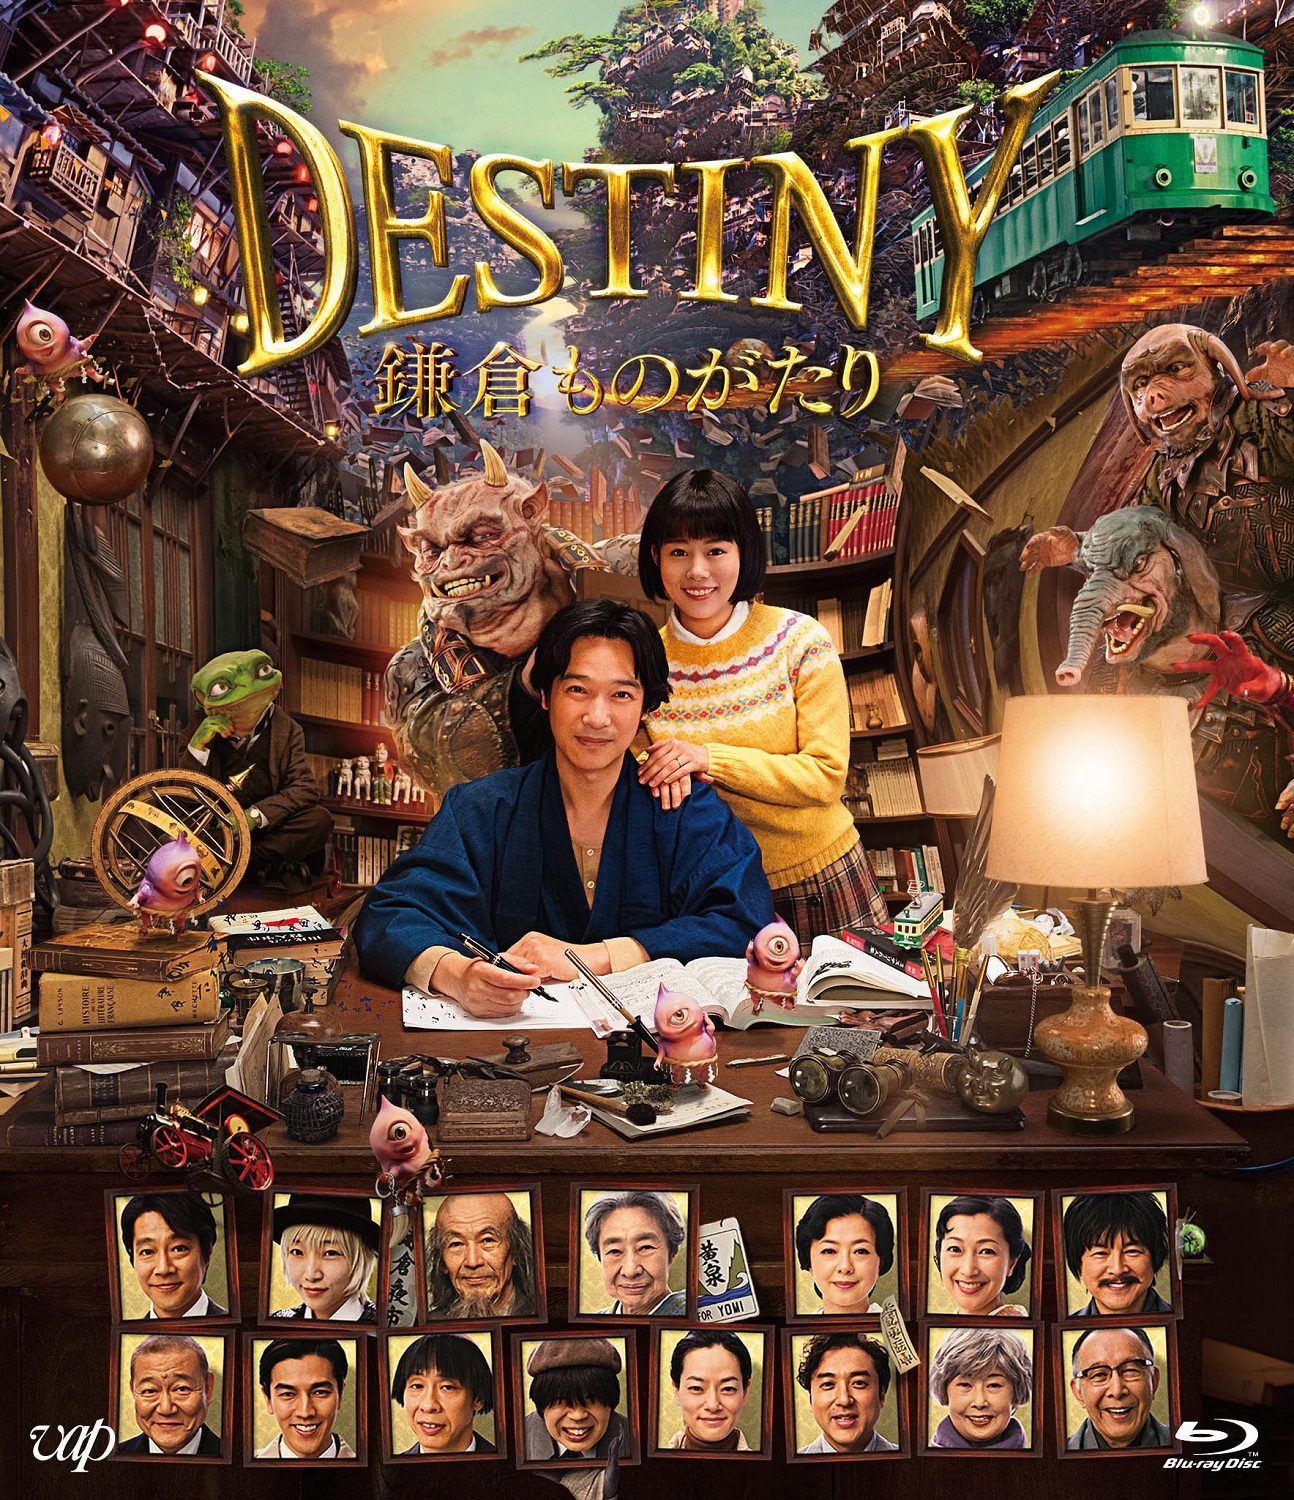 镰仓物语【DIY次世代国语+国配简繁中字】 Destiny The Tale of Kamakura 2017 1080p Blu-ray AVC DTS-HD MA 5.1-Huan@HDSky    [42.44 GB ]-6.jpg